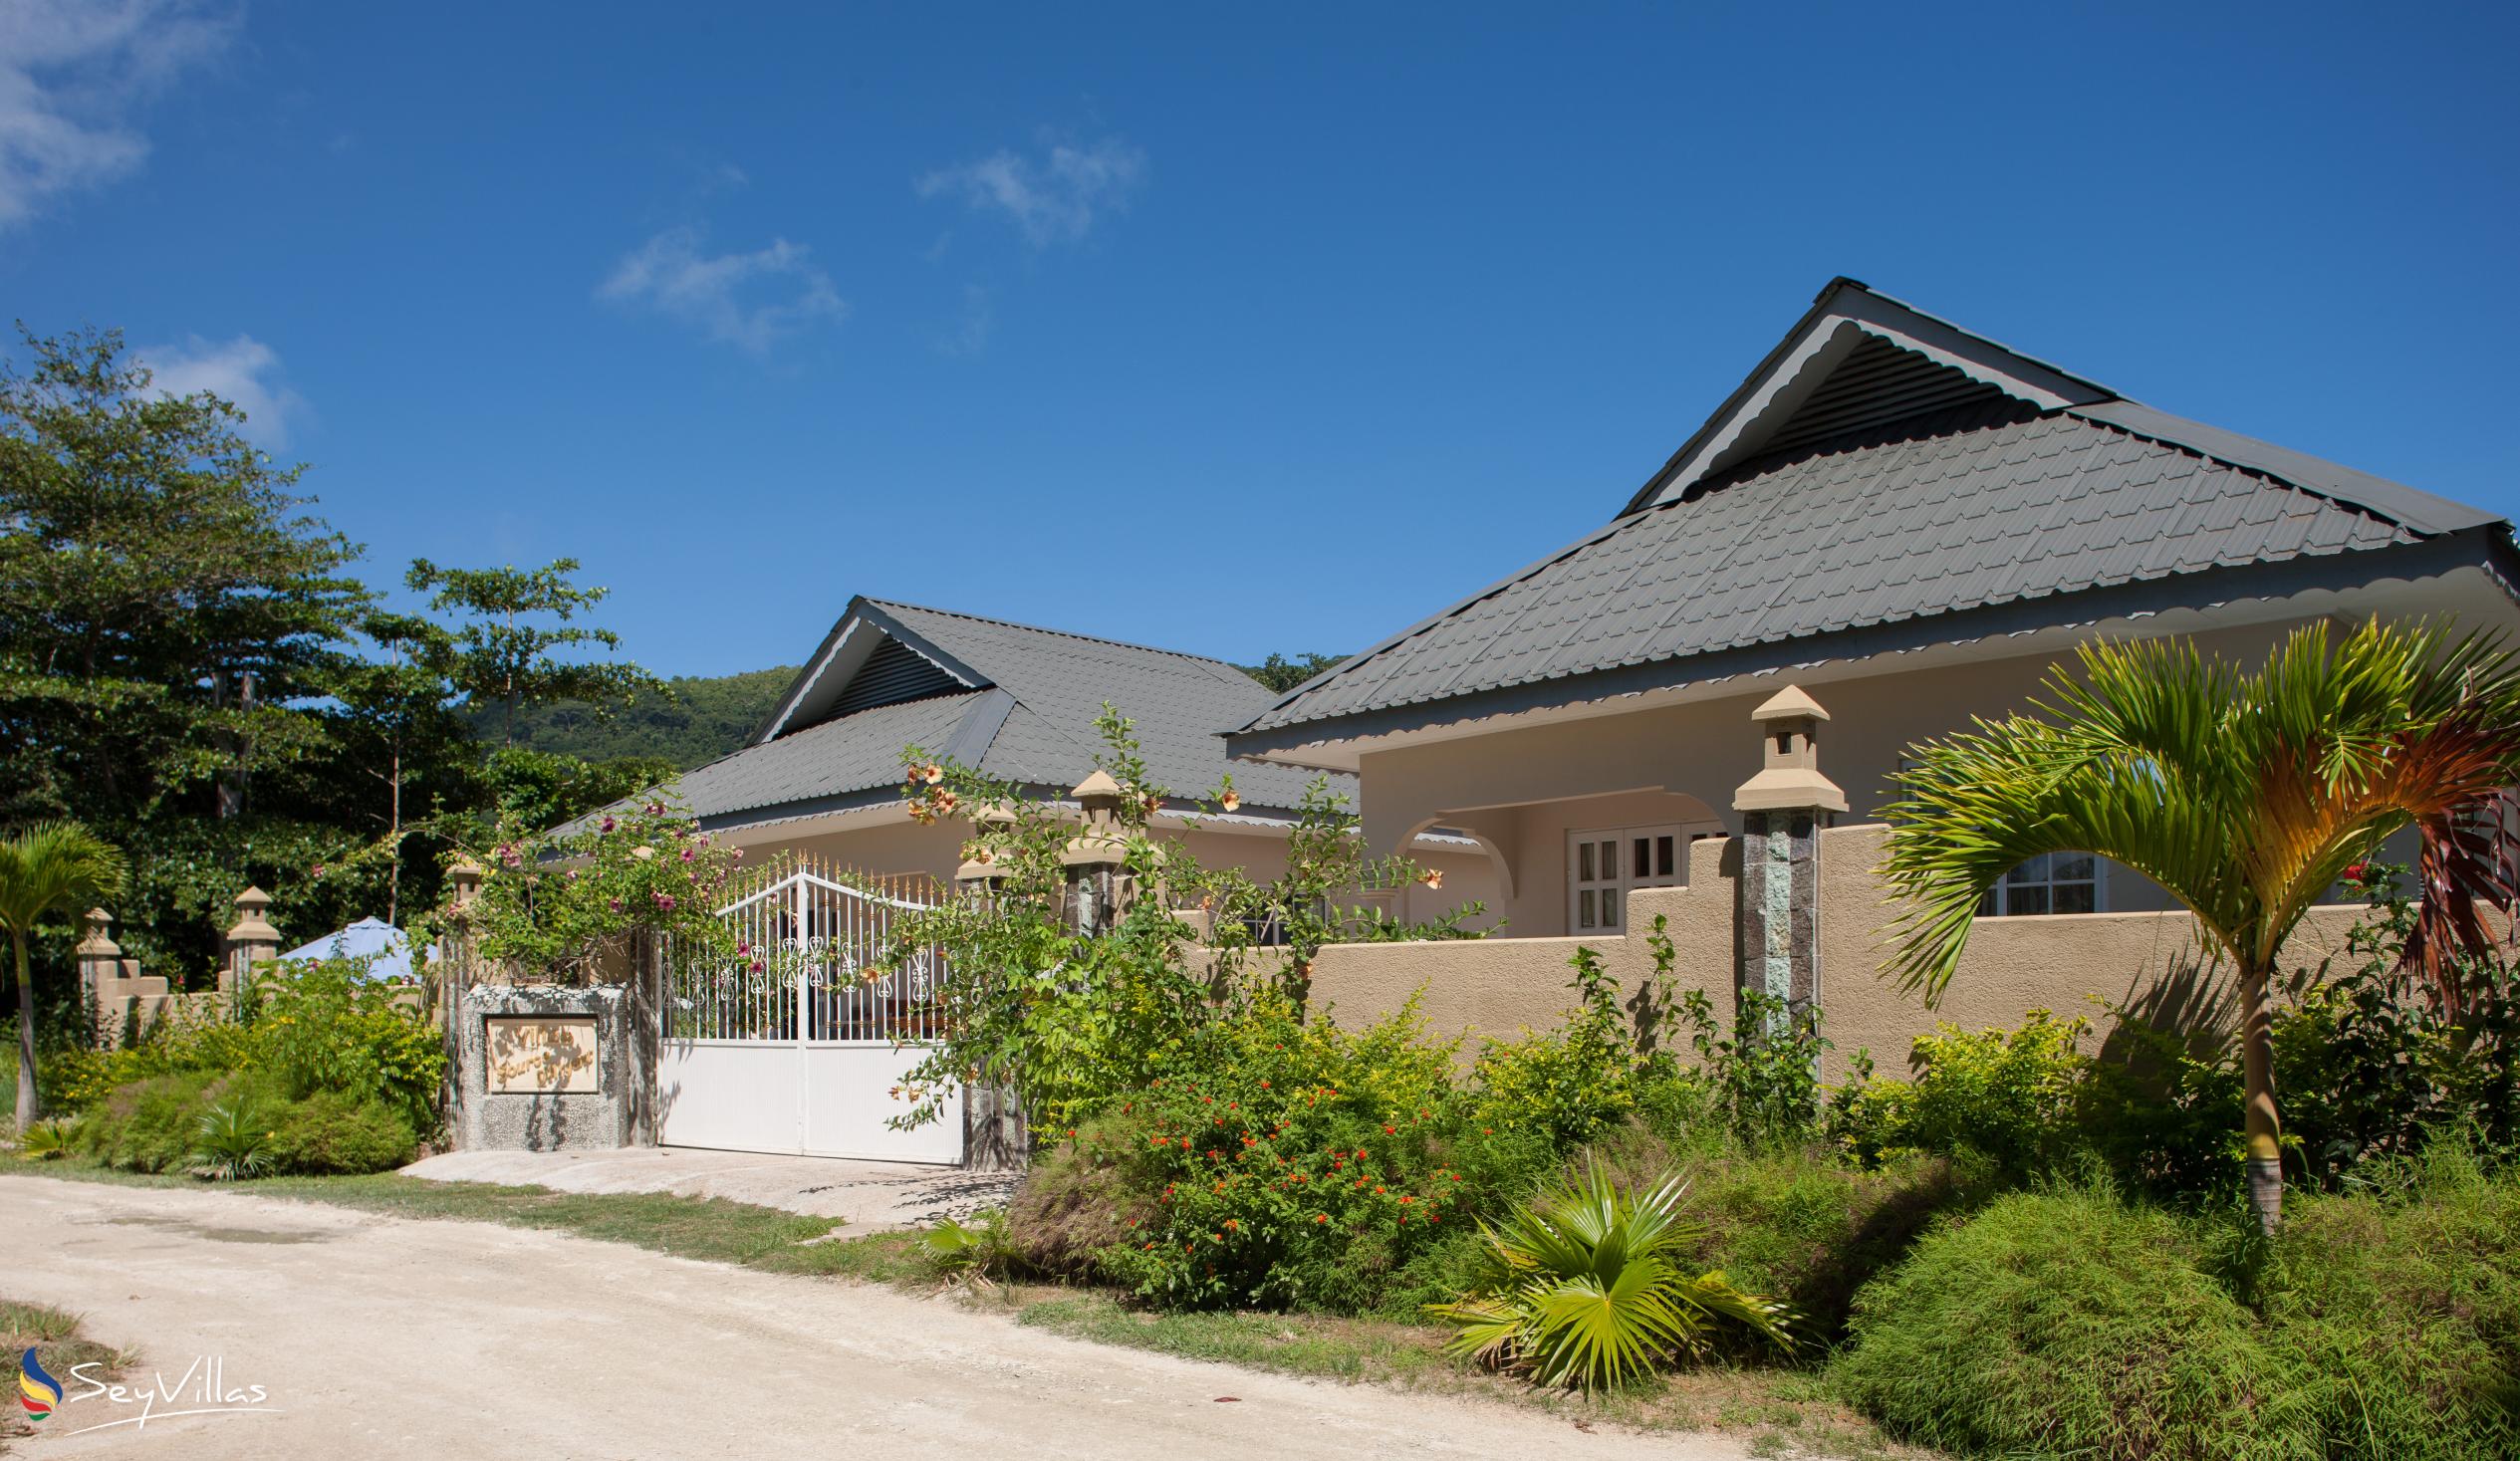 Photo 4: Villa Source D'Argent - Outdoor area - La Digue (Seychelles)